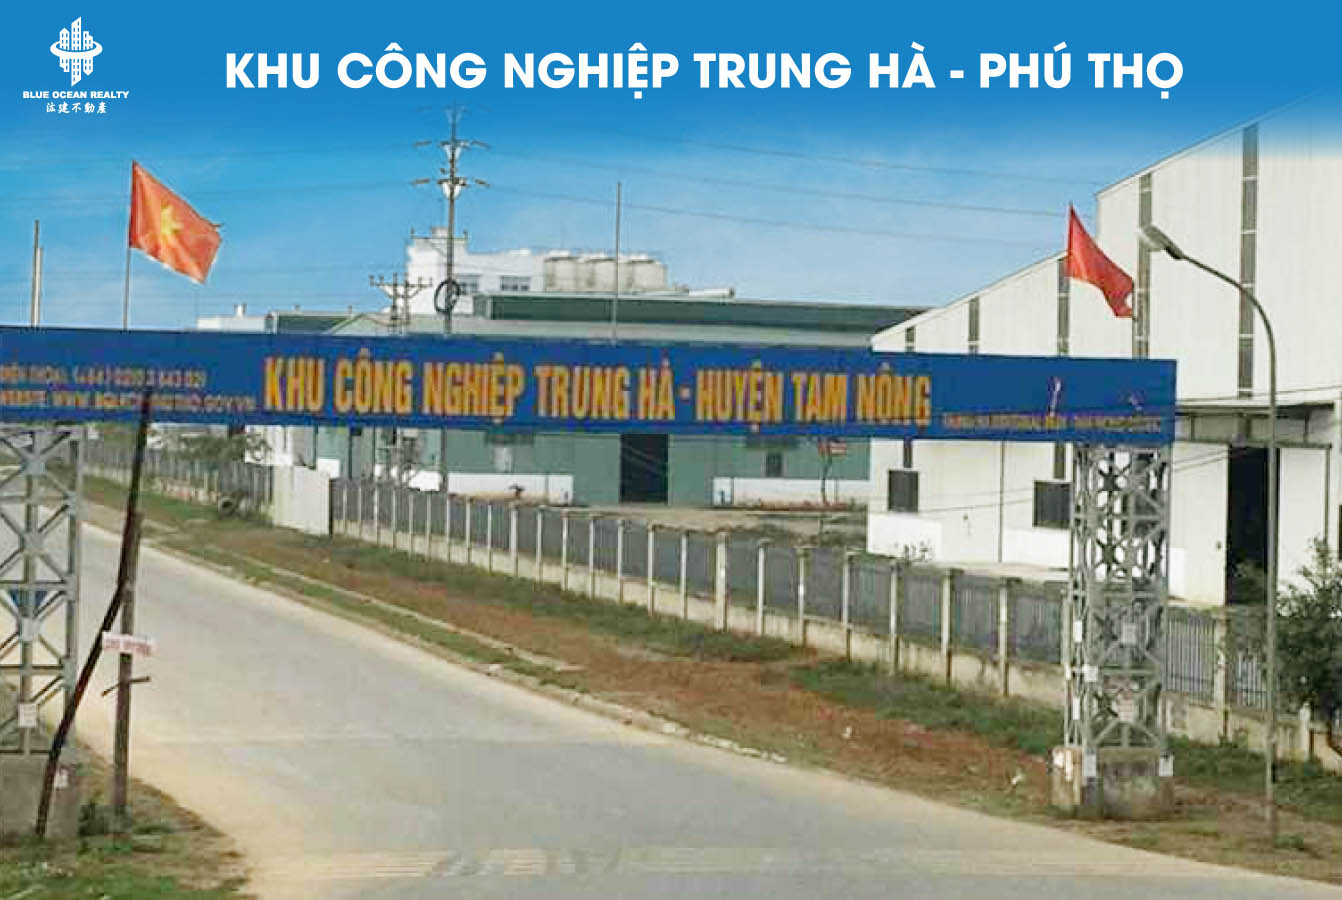 Khu công nghiệp (KCN) Trung Hà tỉnh Phú Thọ